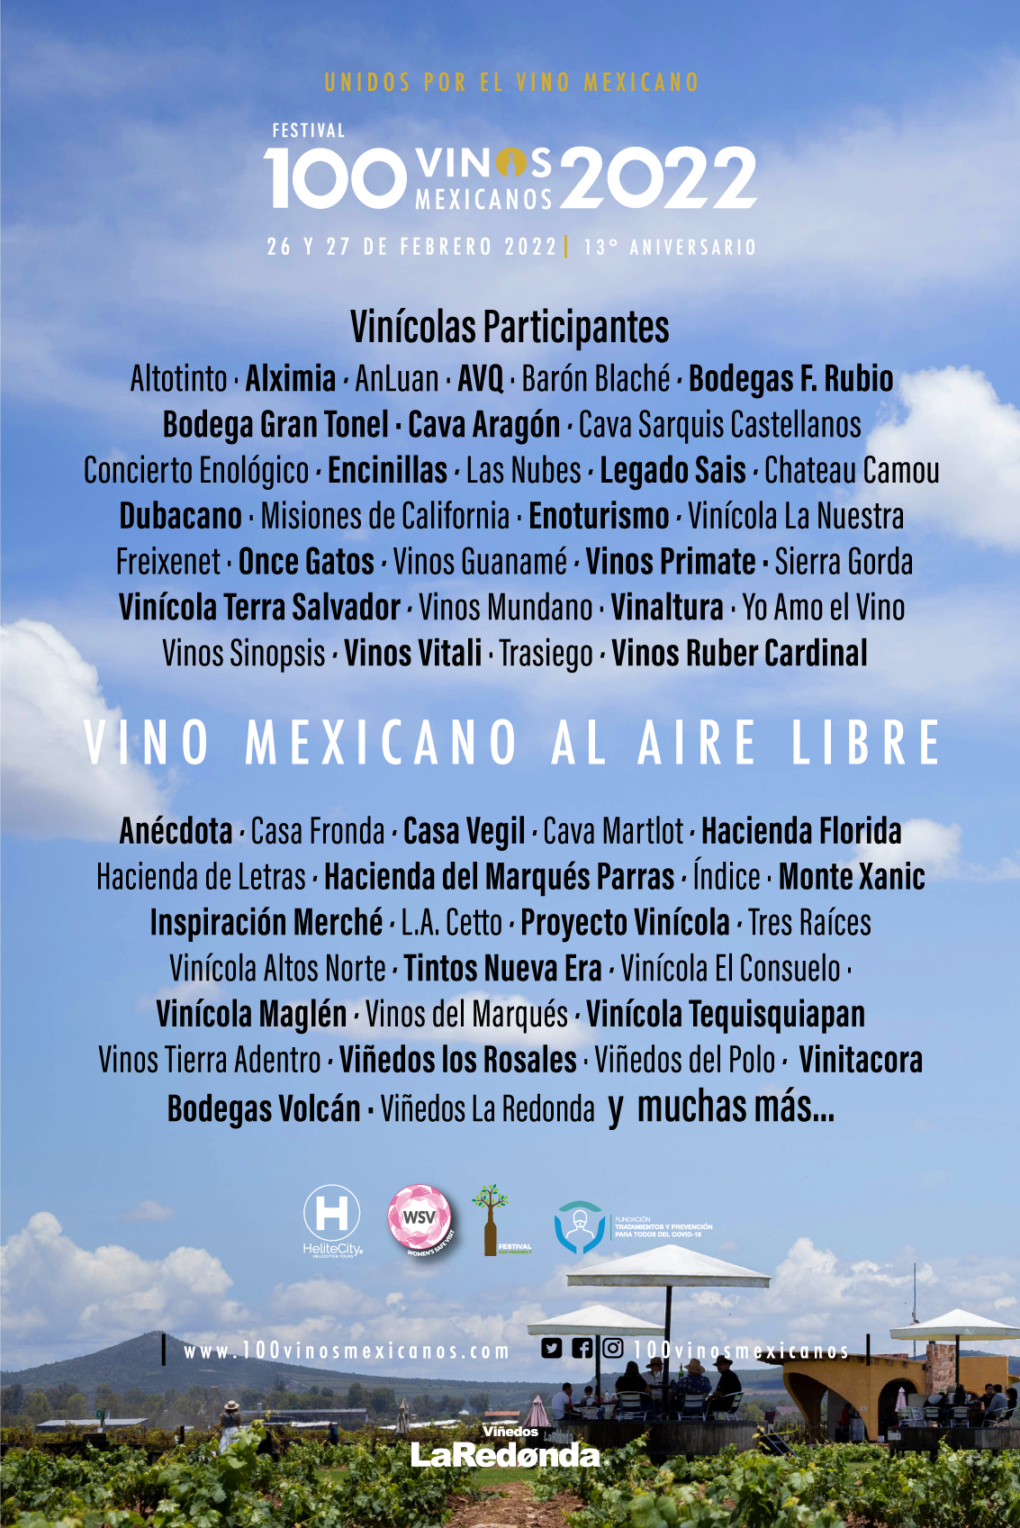 El festival 100 vinos mexicanos está de regreso en viñedos La Redonda –  Buenos Vinos